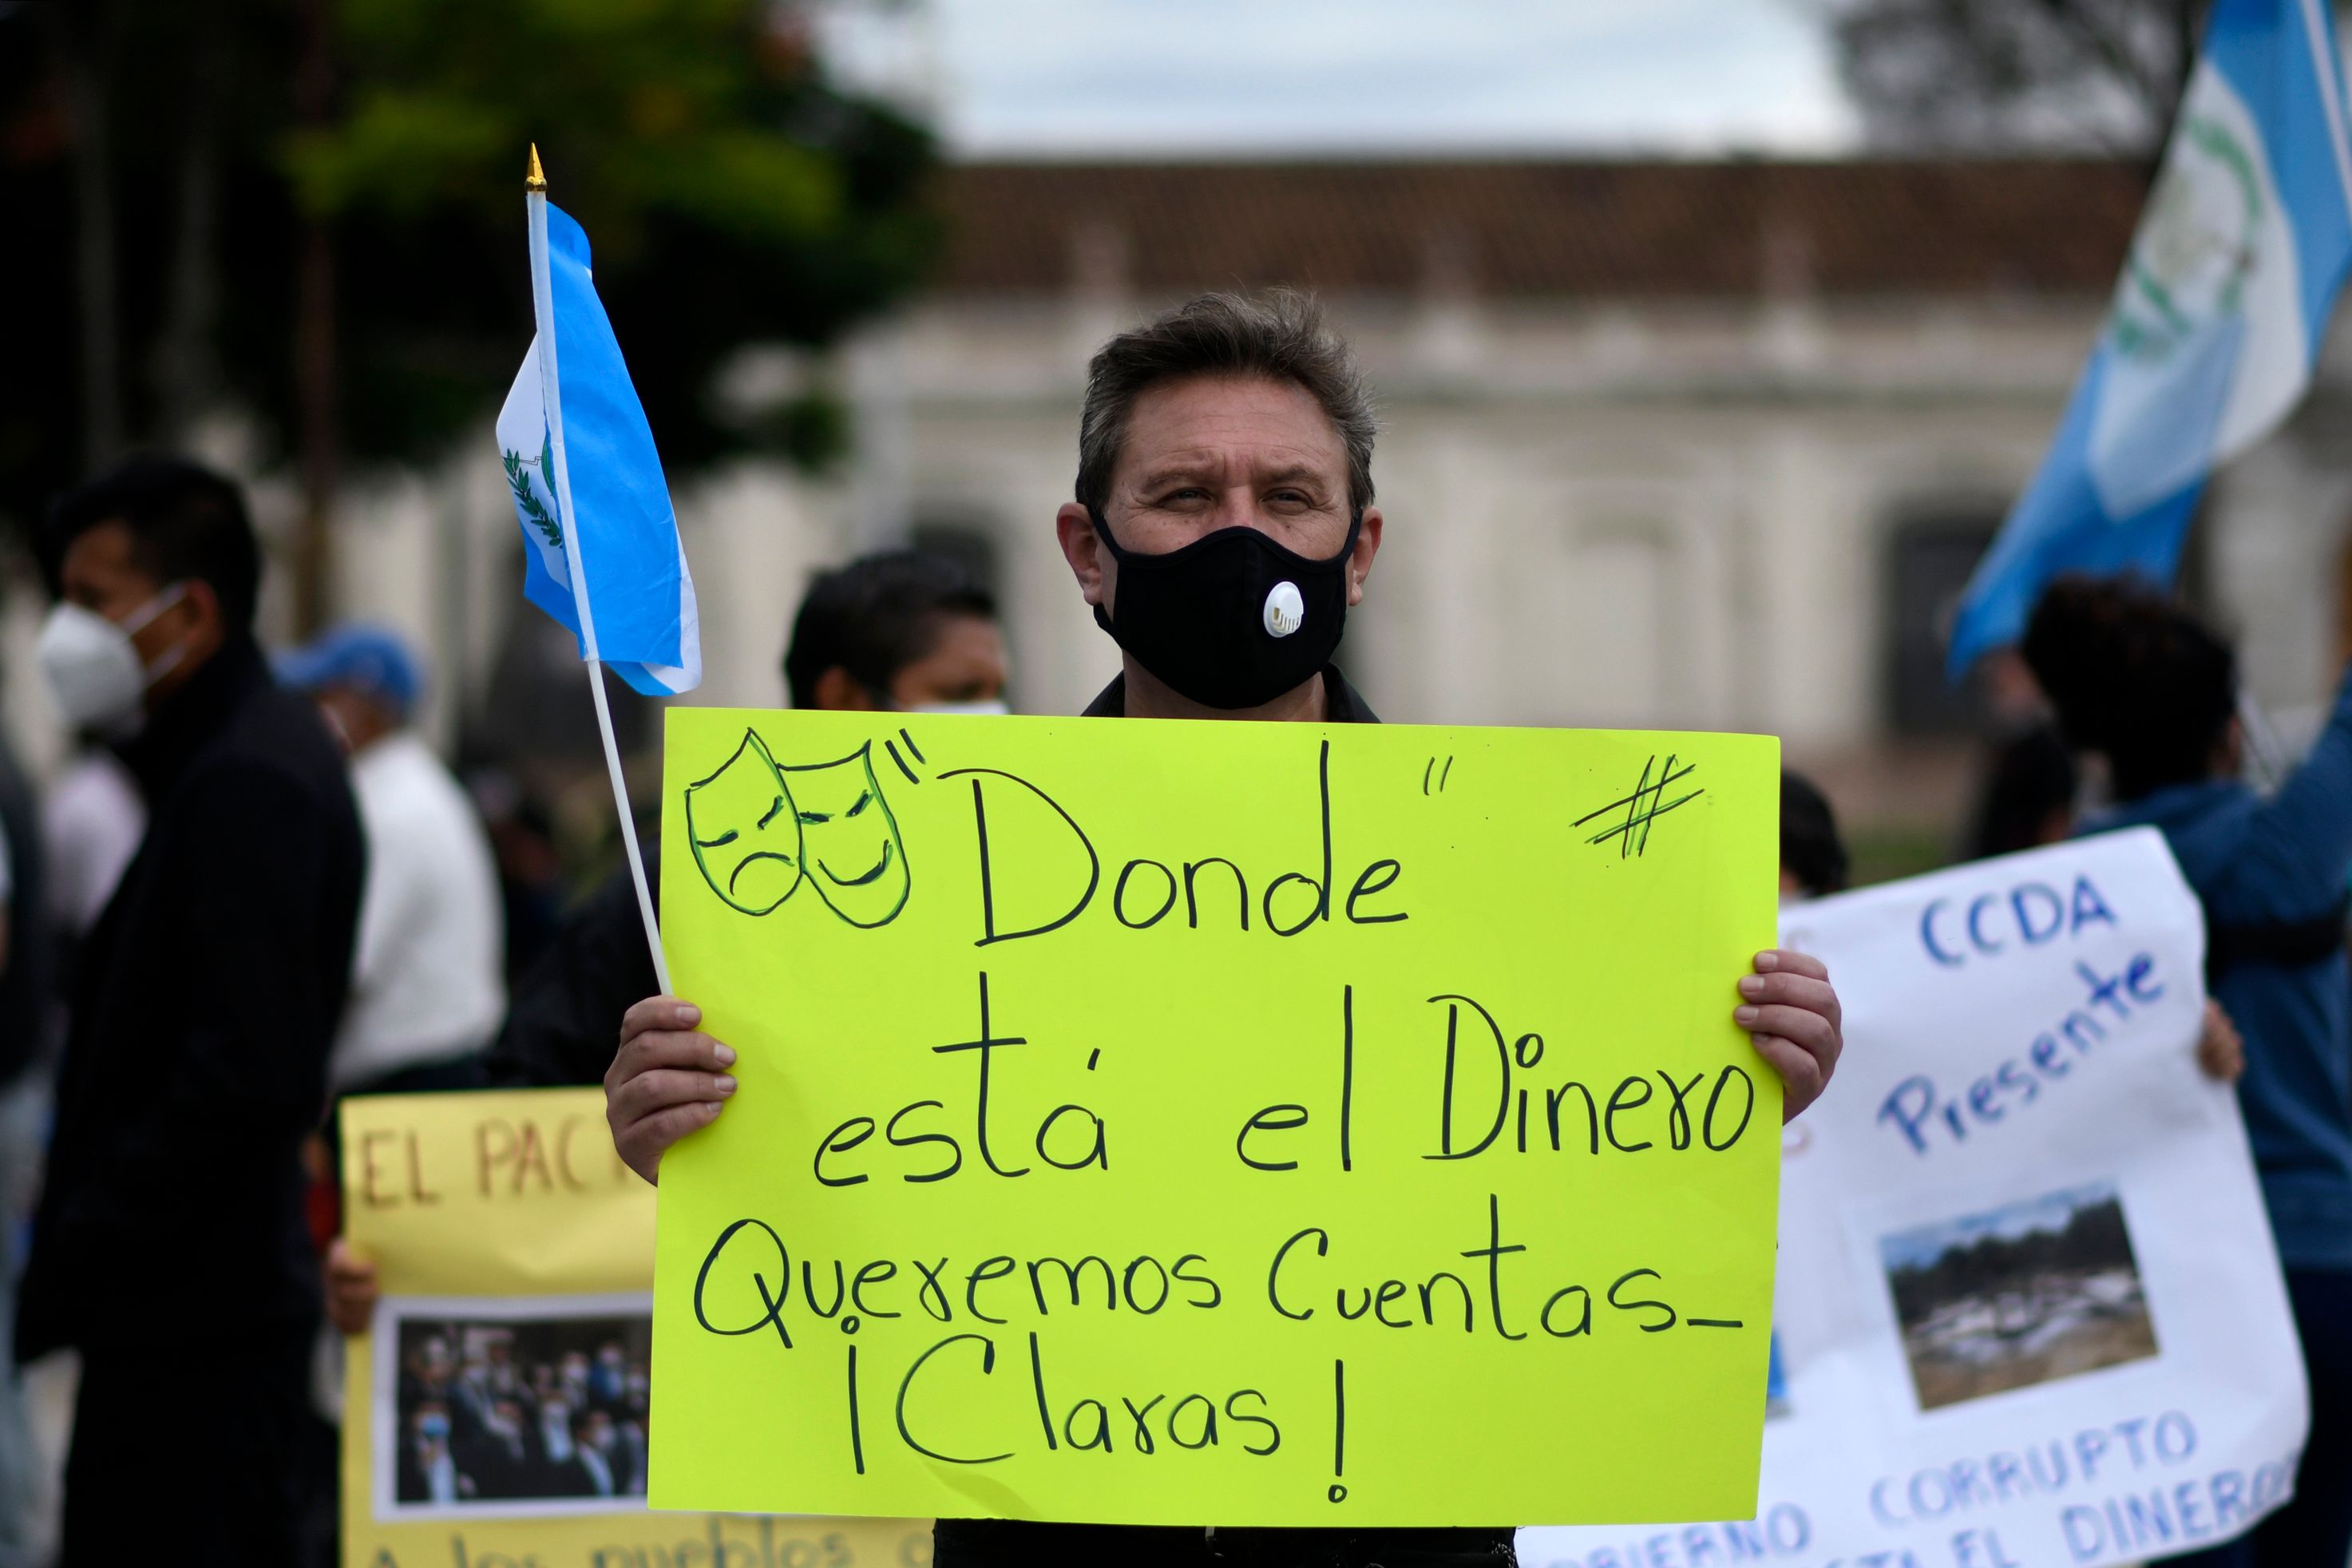 Un hombre sostiene un cartel durante una de las manifestaciones pacificas que buscan conocer el destino de los fondos asignados para la crisis del Covid - 19. Fotografía: Prensa Libre. 